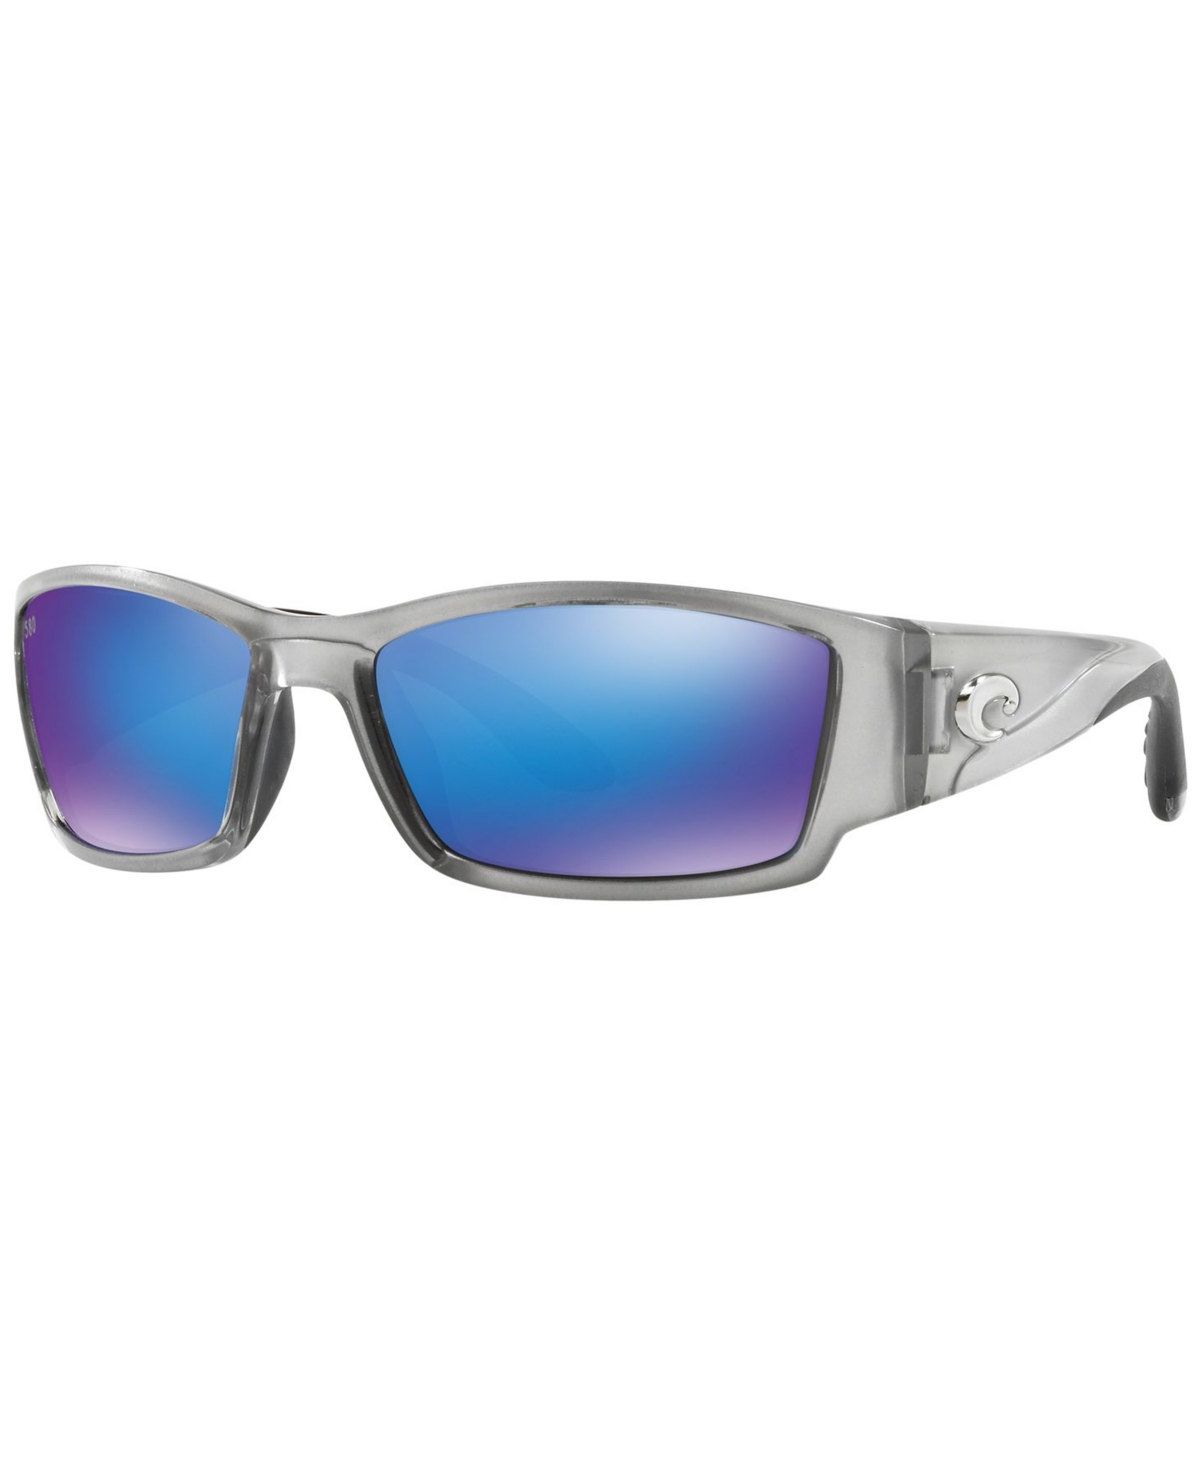 Costa Del Mar Polarized Sunglasses, Corbina 62